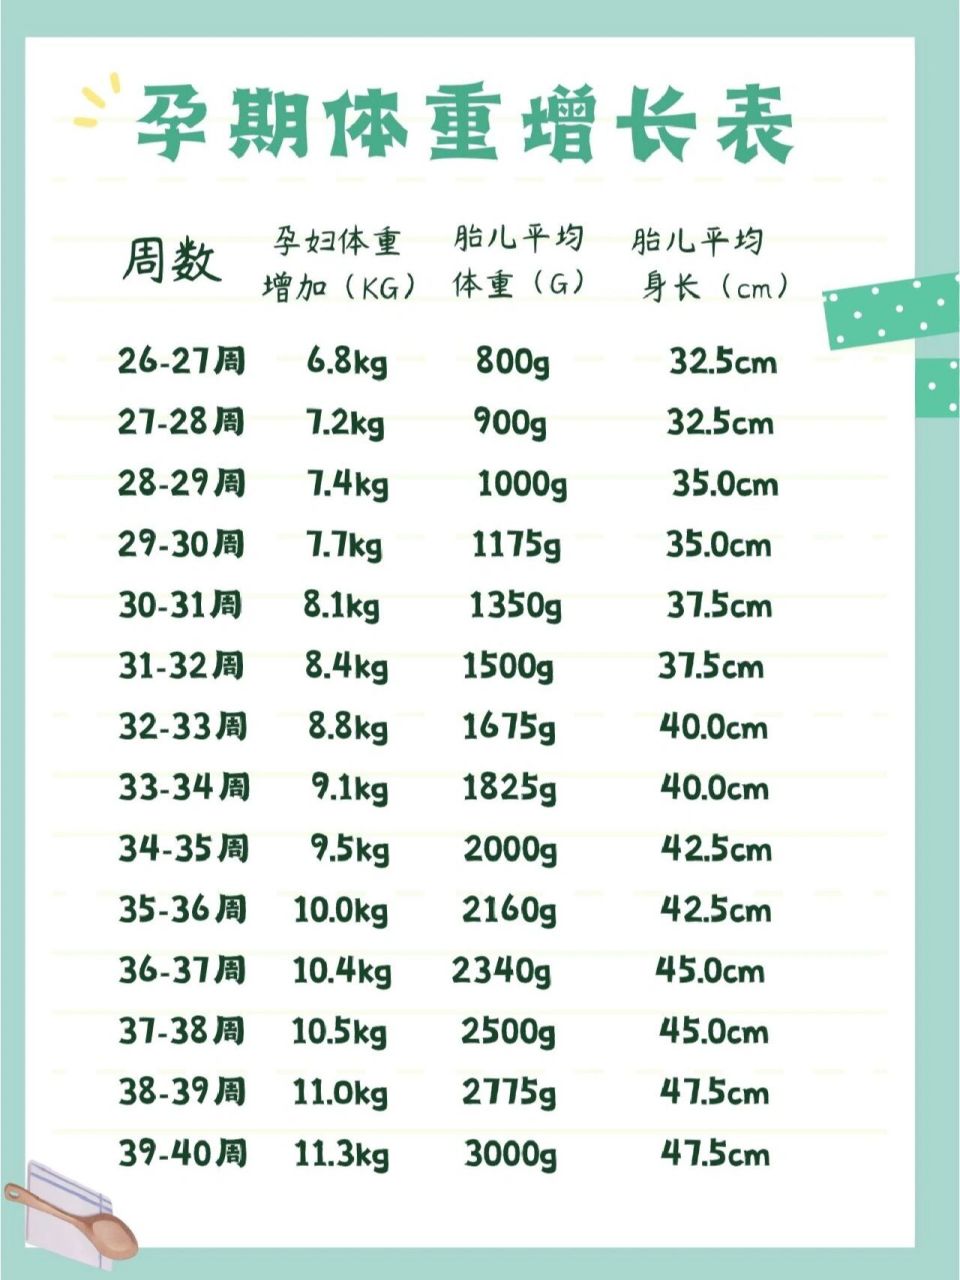 胎儿体重标准值对照表图片